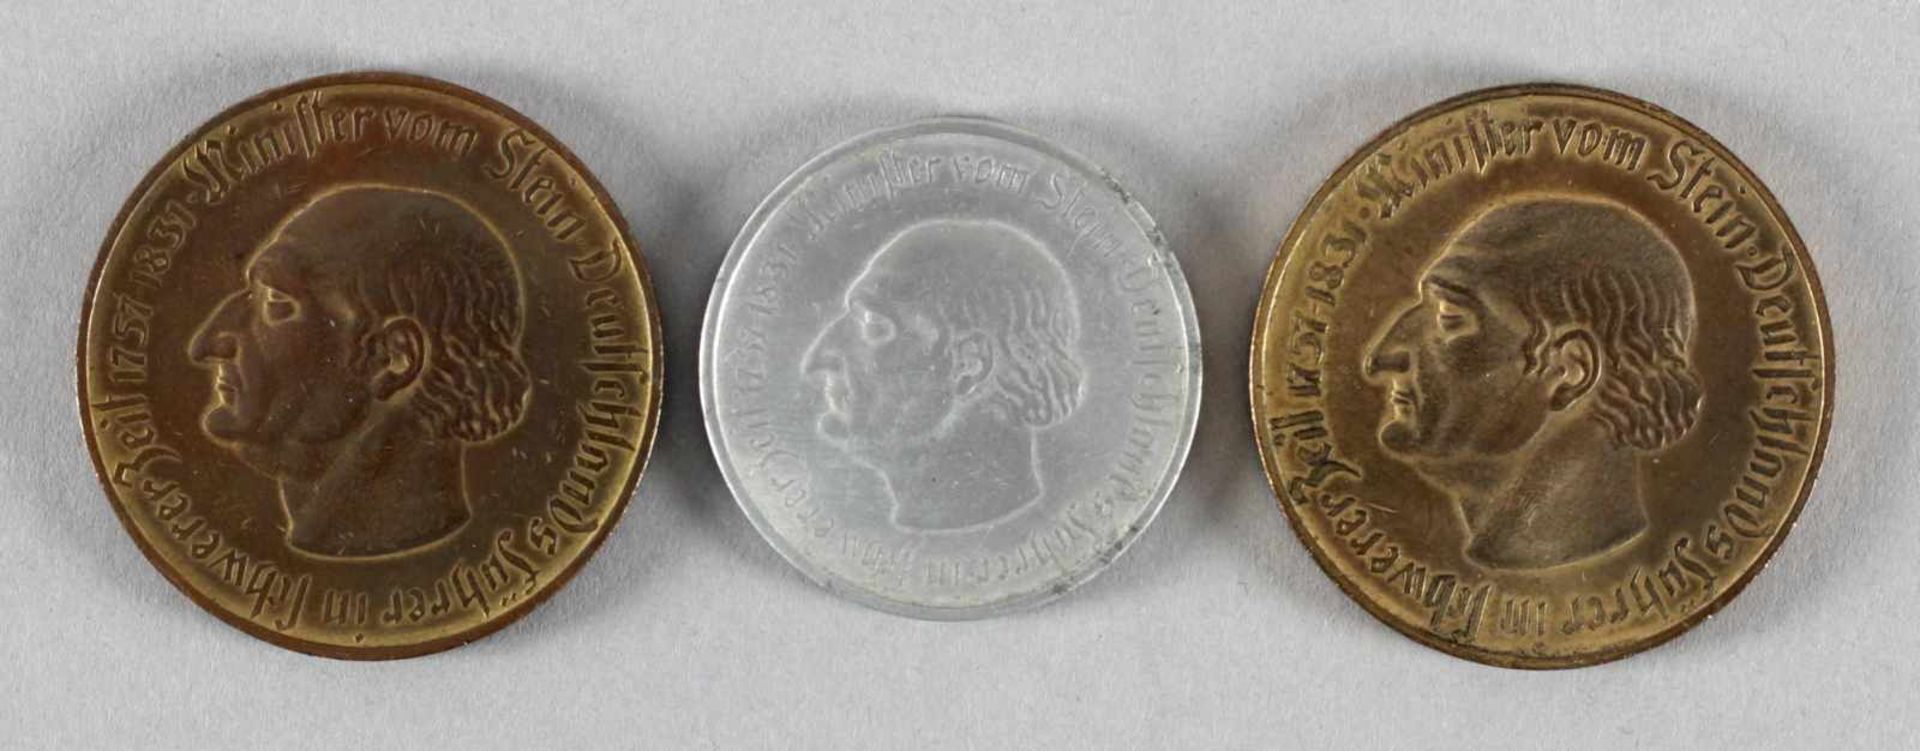 3 Notgeld-Münzen, 1923, Provinz Westfalen, Minister vom Stein<